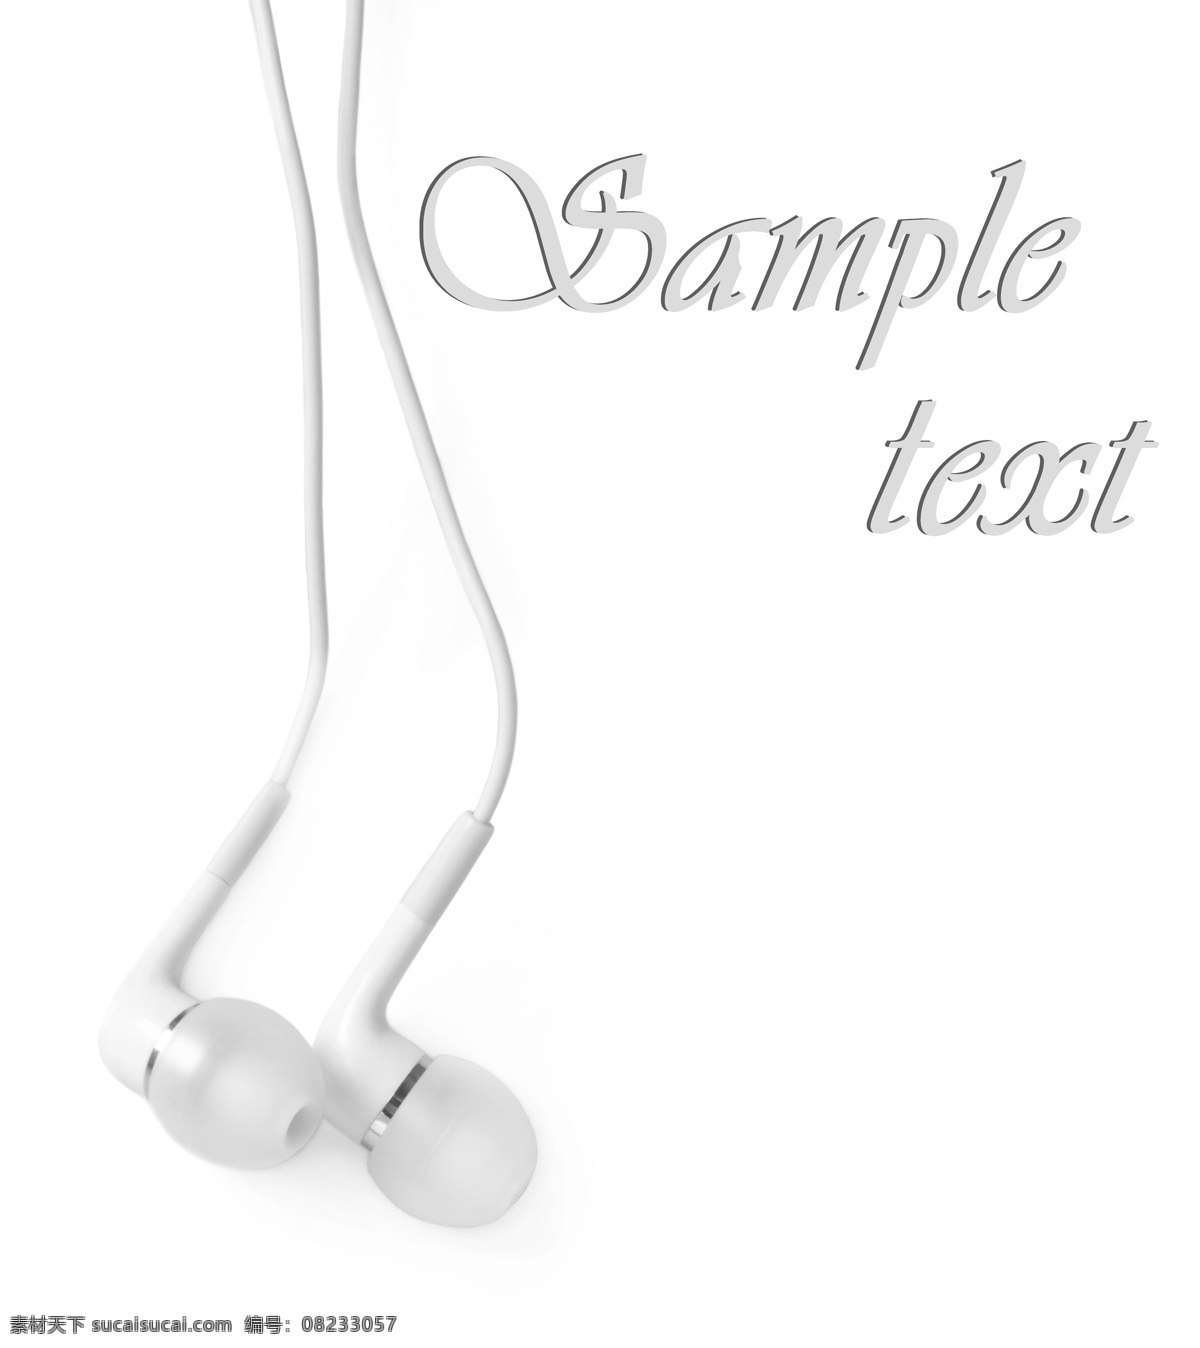 白色 时尚 耳机 耳机摄影 耳机素材 生活用品 魔音耳机 音乐 耳机广告 其他类别 生活百科